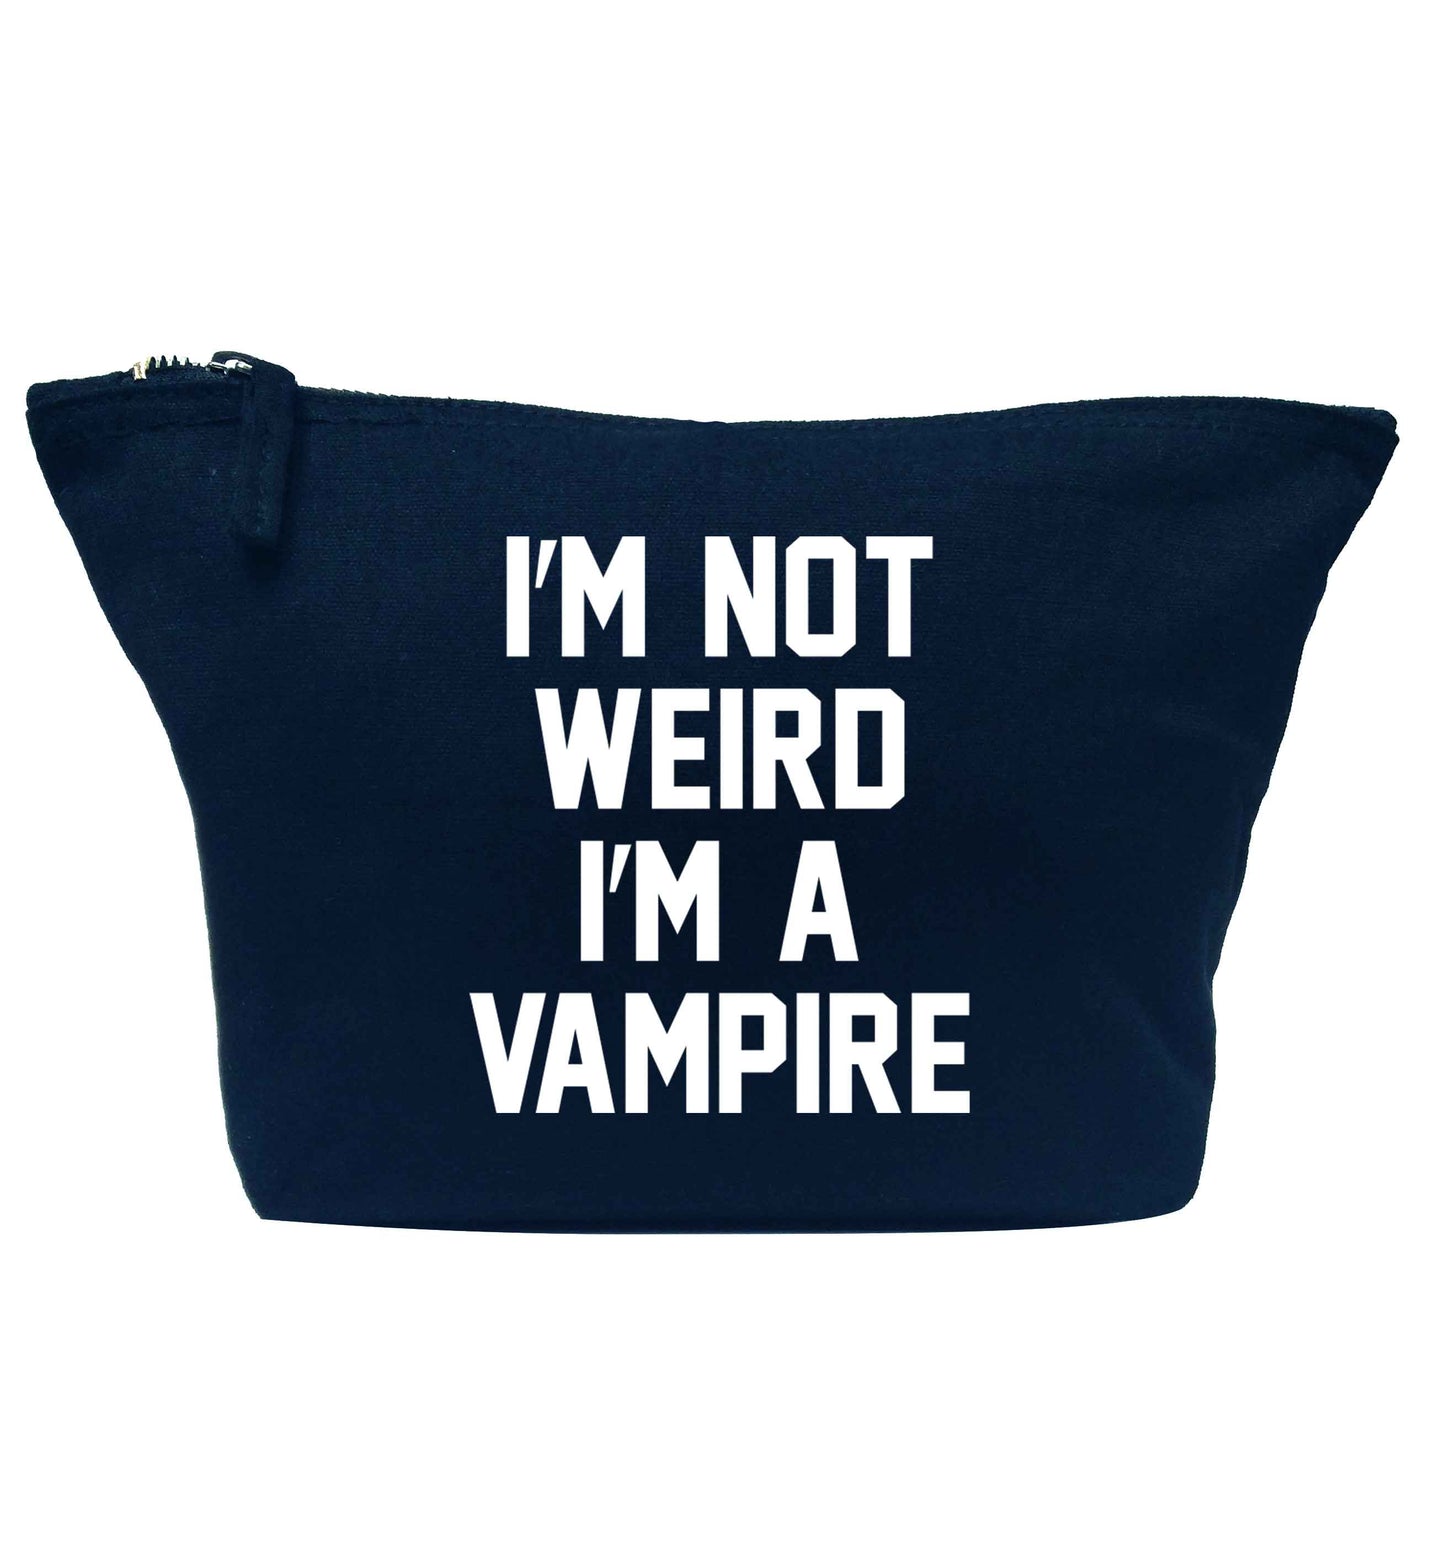 I'm not weird I'm a vampire navy makeup bag